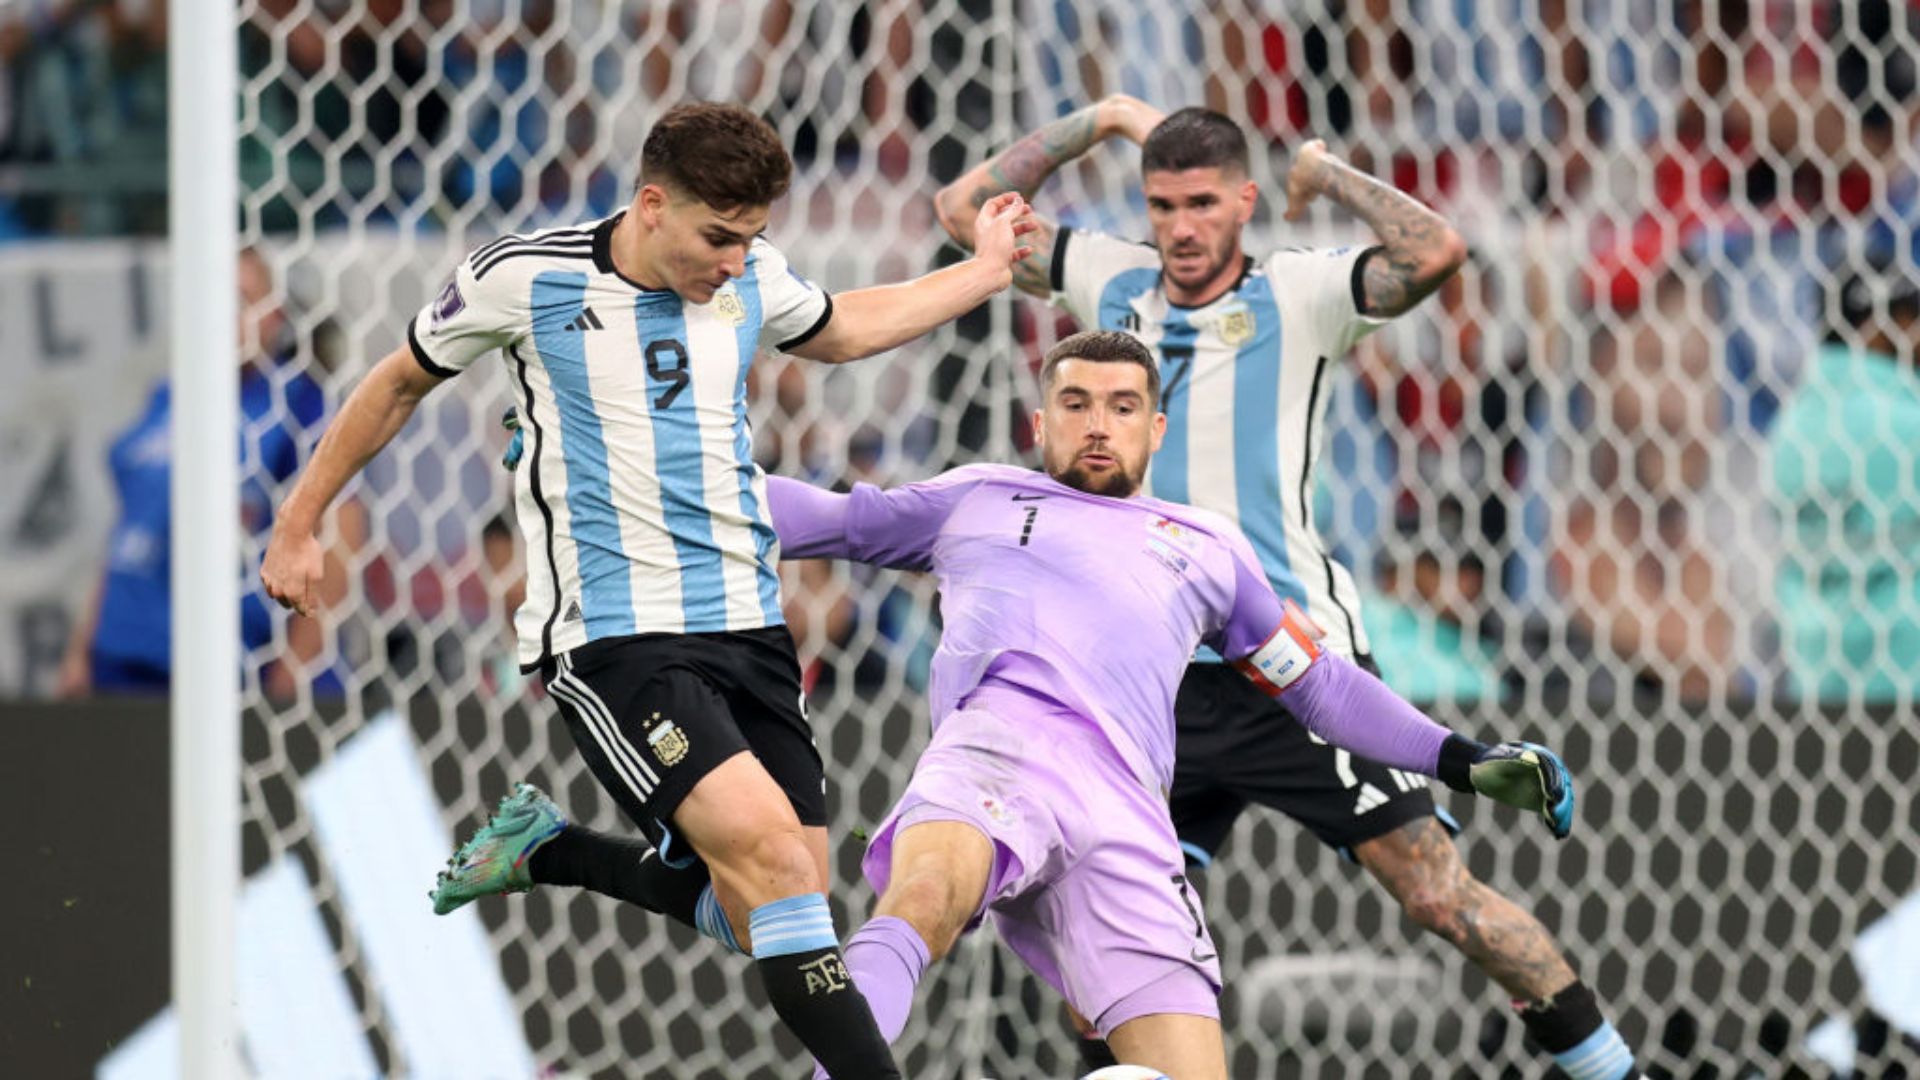 Momento em que surgiu a oportunidade do segundo gol da Argentina (Crédito: Getty Images)